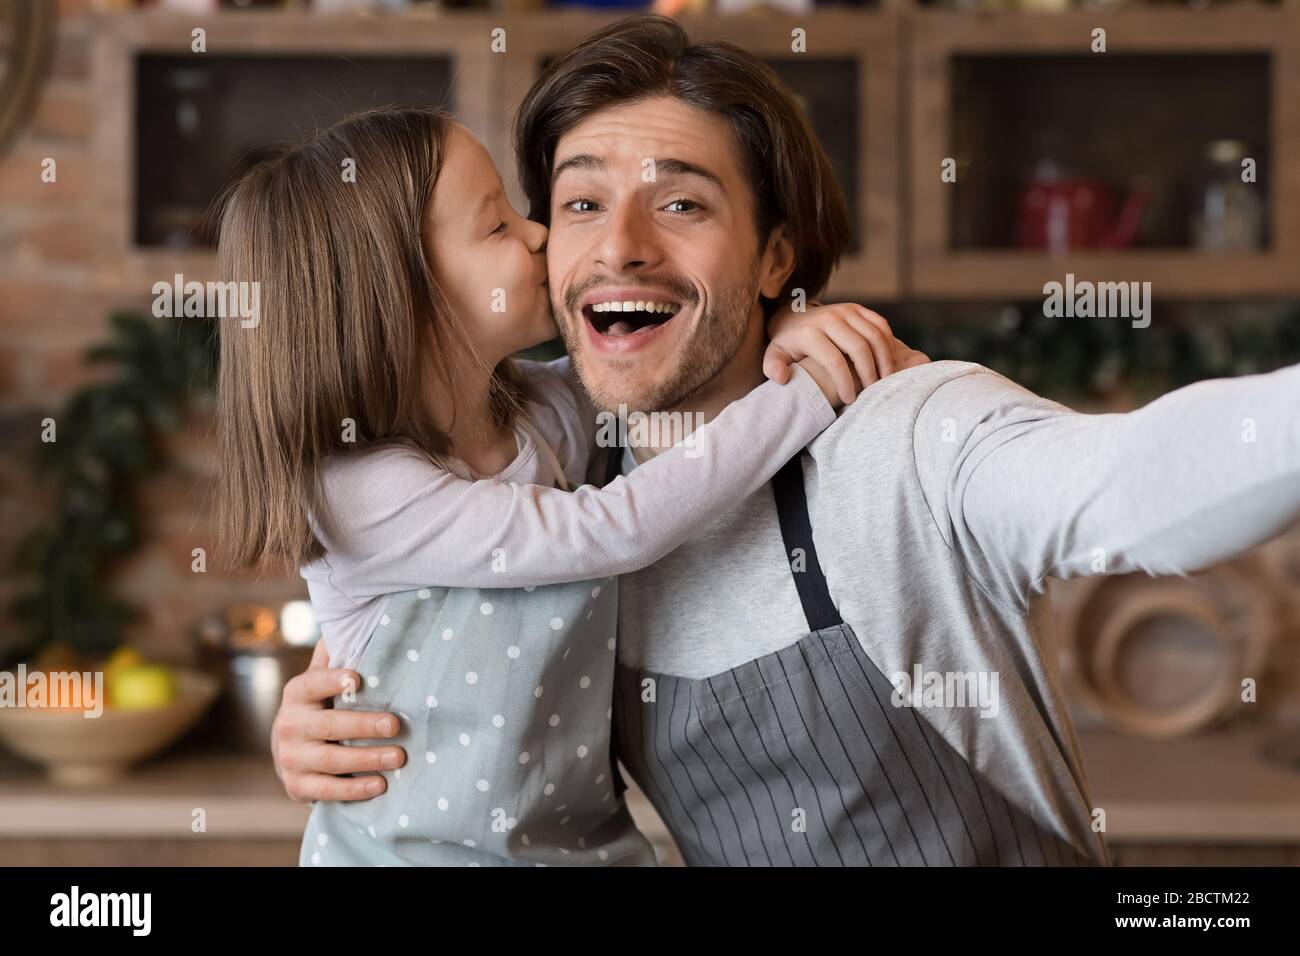 Kleines Mädchen, Das Vater Küsst, Während Sie Selfie In Kitchen Nehmen Stockfoto